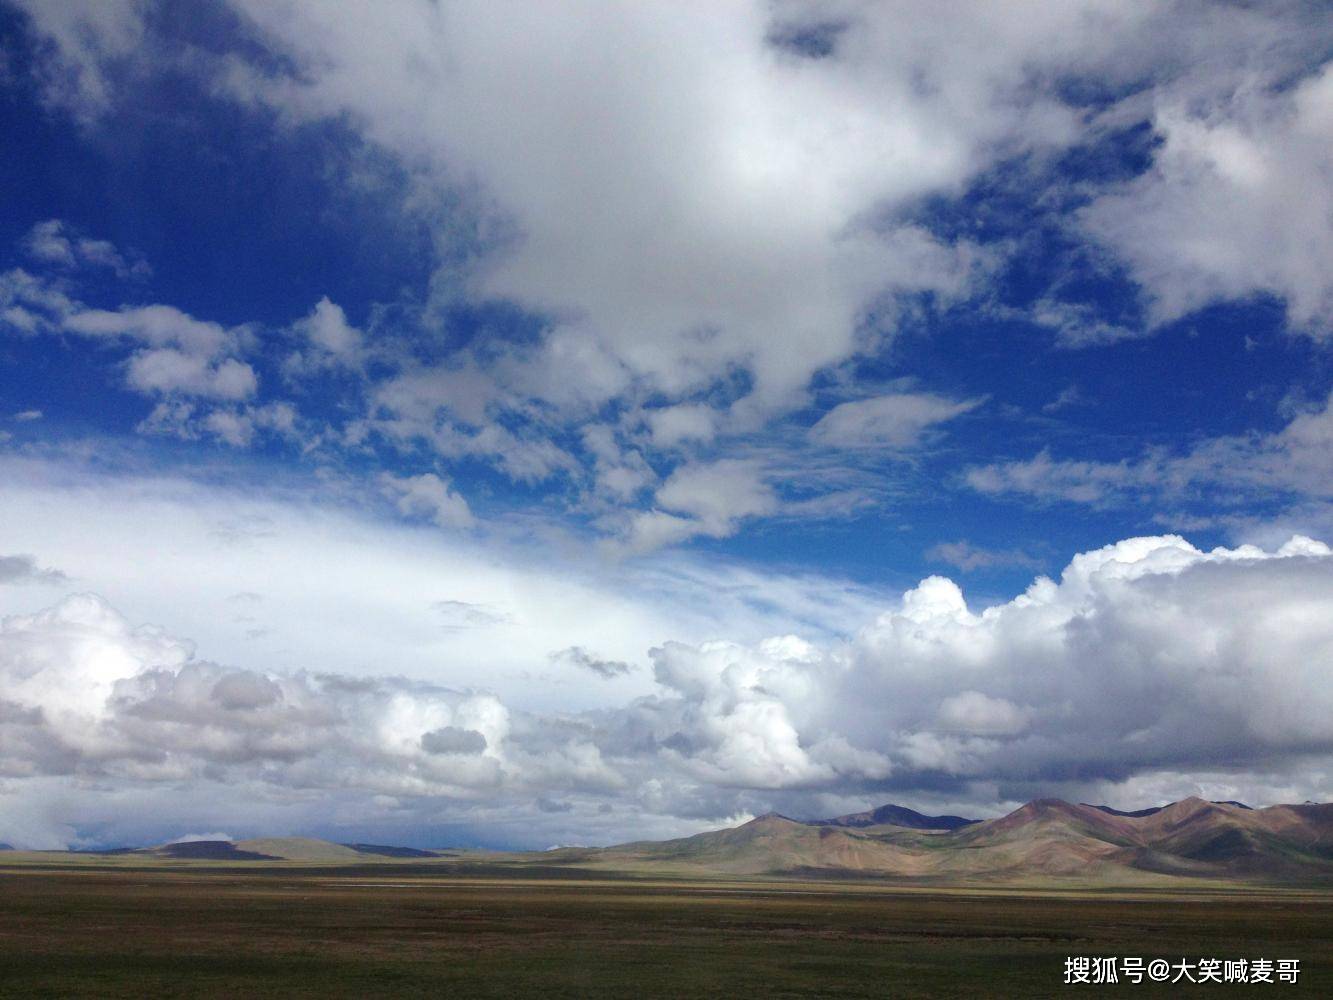 进藏海拔最高的线路, 穿越了念青唐古拉山脉, 被誉为生命的禁区